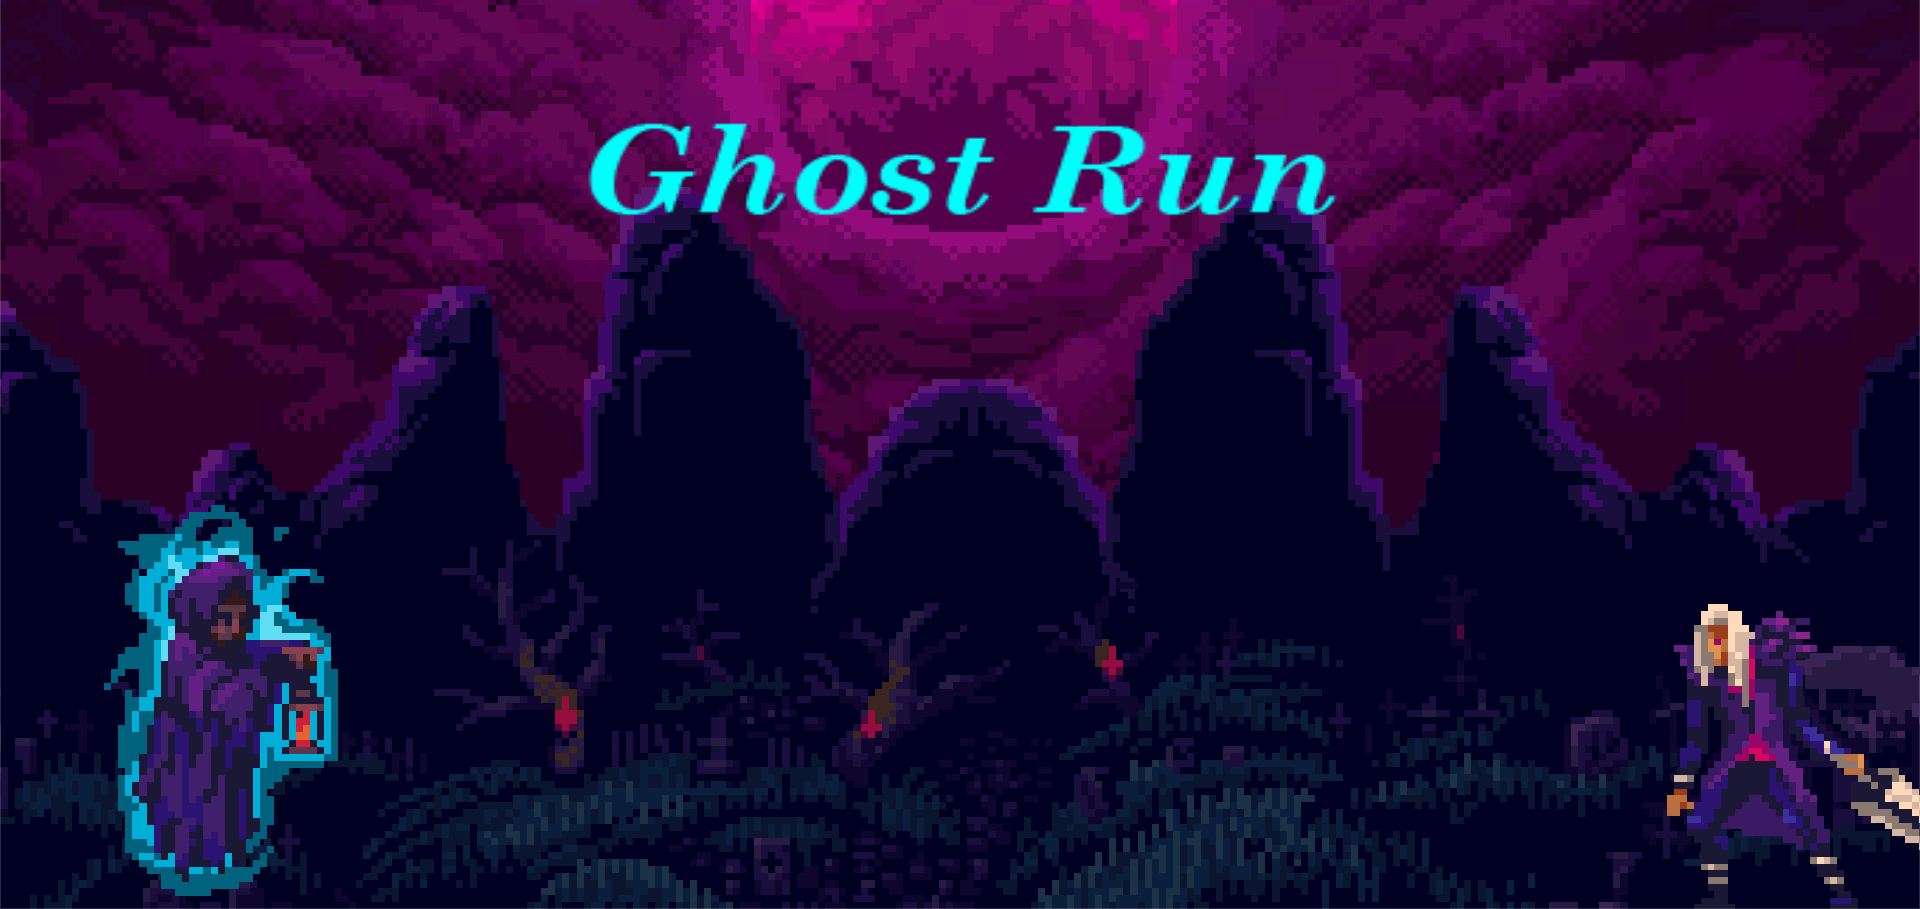 Ghost Run